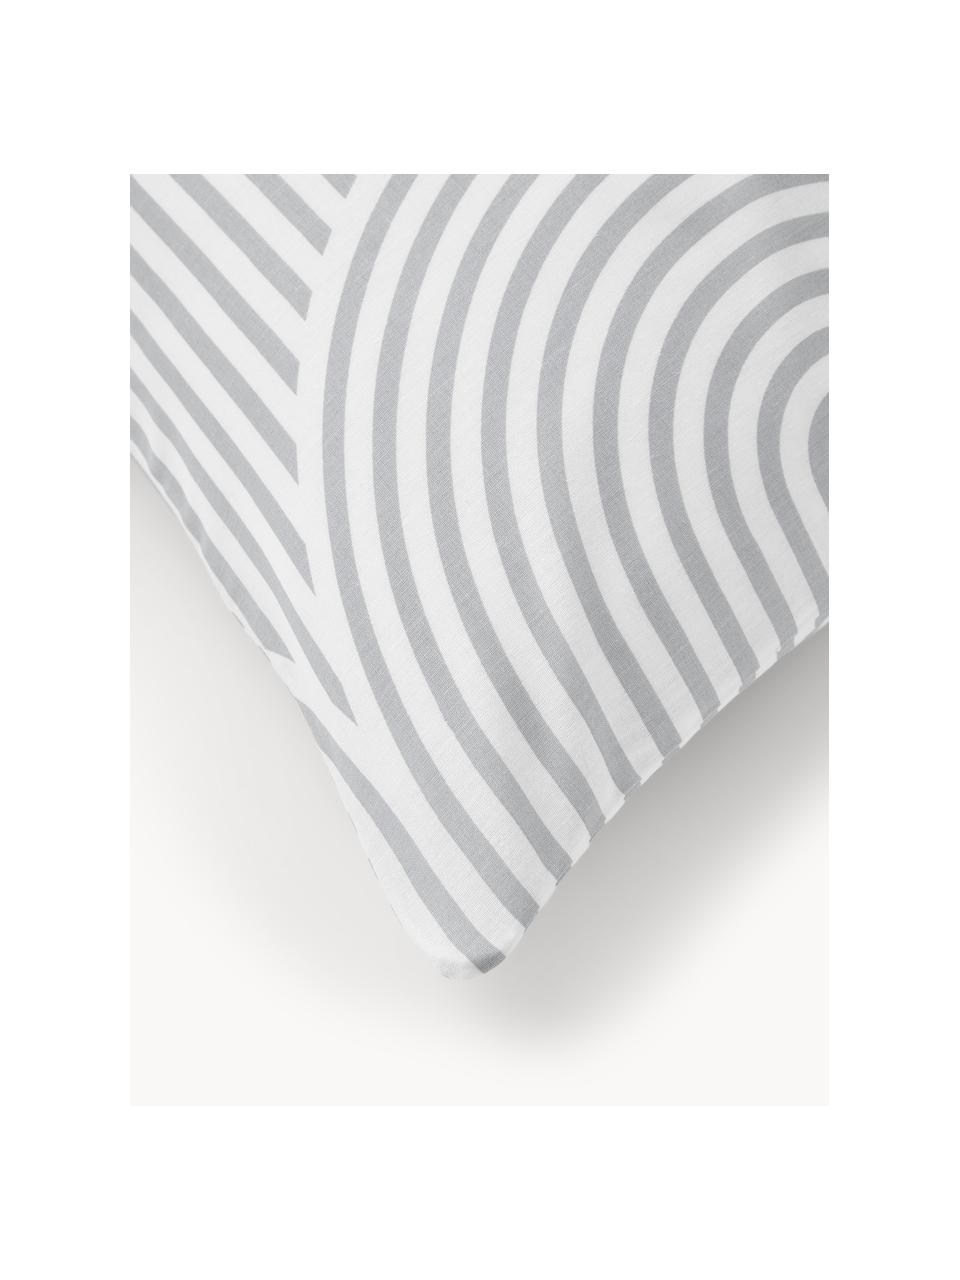 Taie d'oreiller en coton Arcs, Gris, blanc, larg. 50 x long. 70 cm